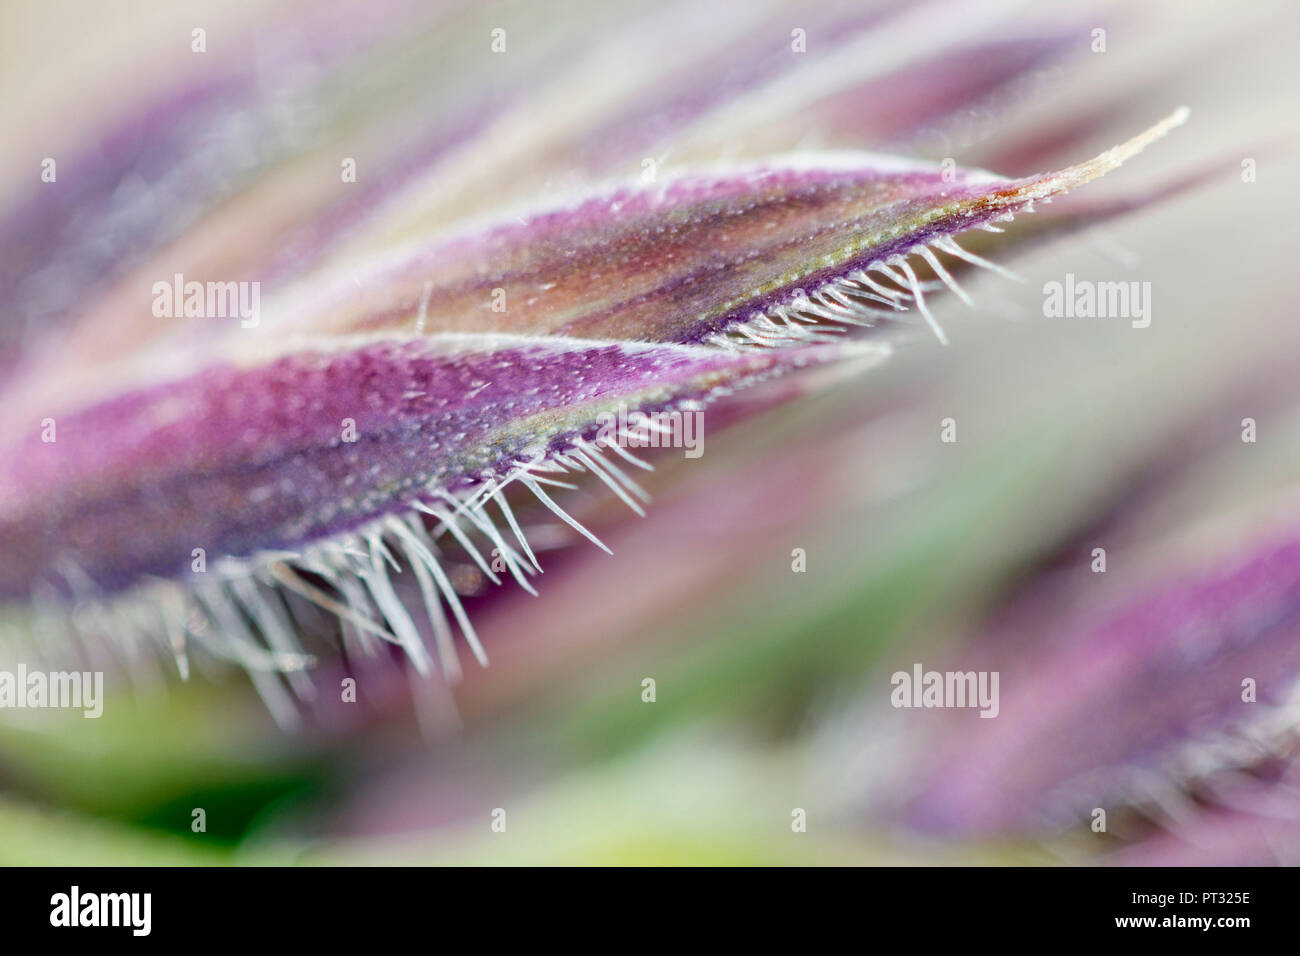 Plant, macro, detail Stock Photo